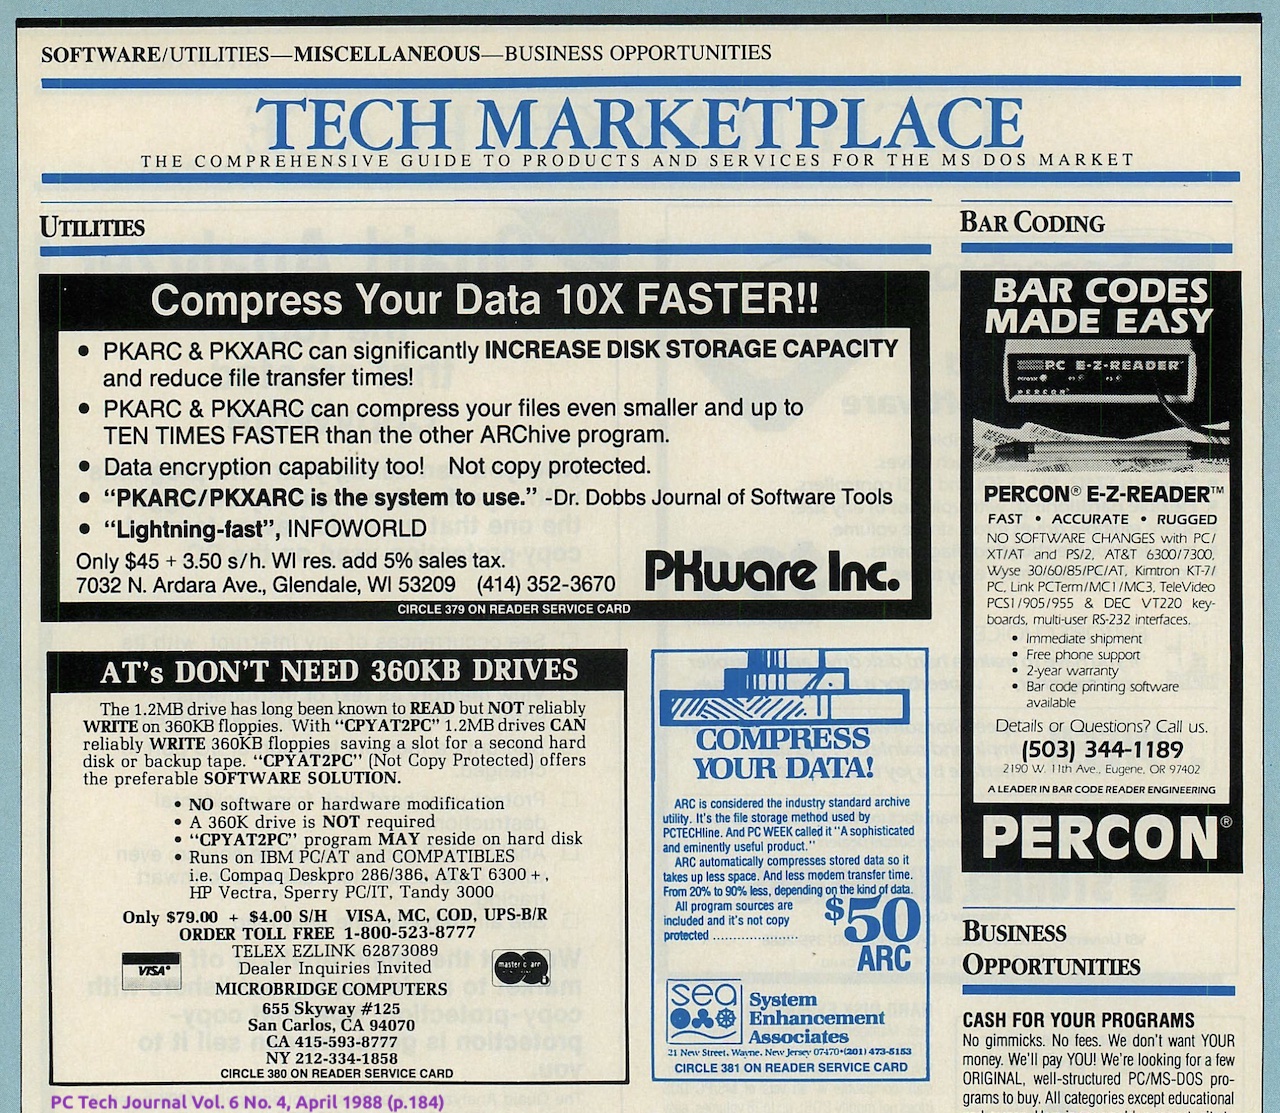 PC Tech Journal April 1988 "ARC" Ads